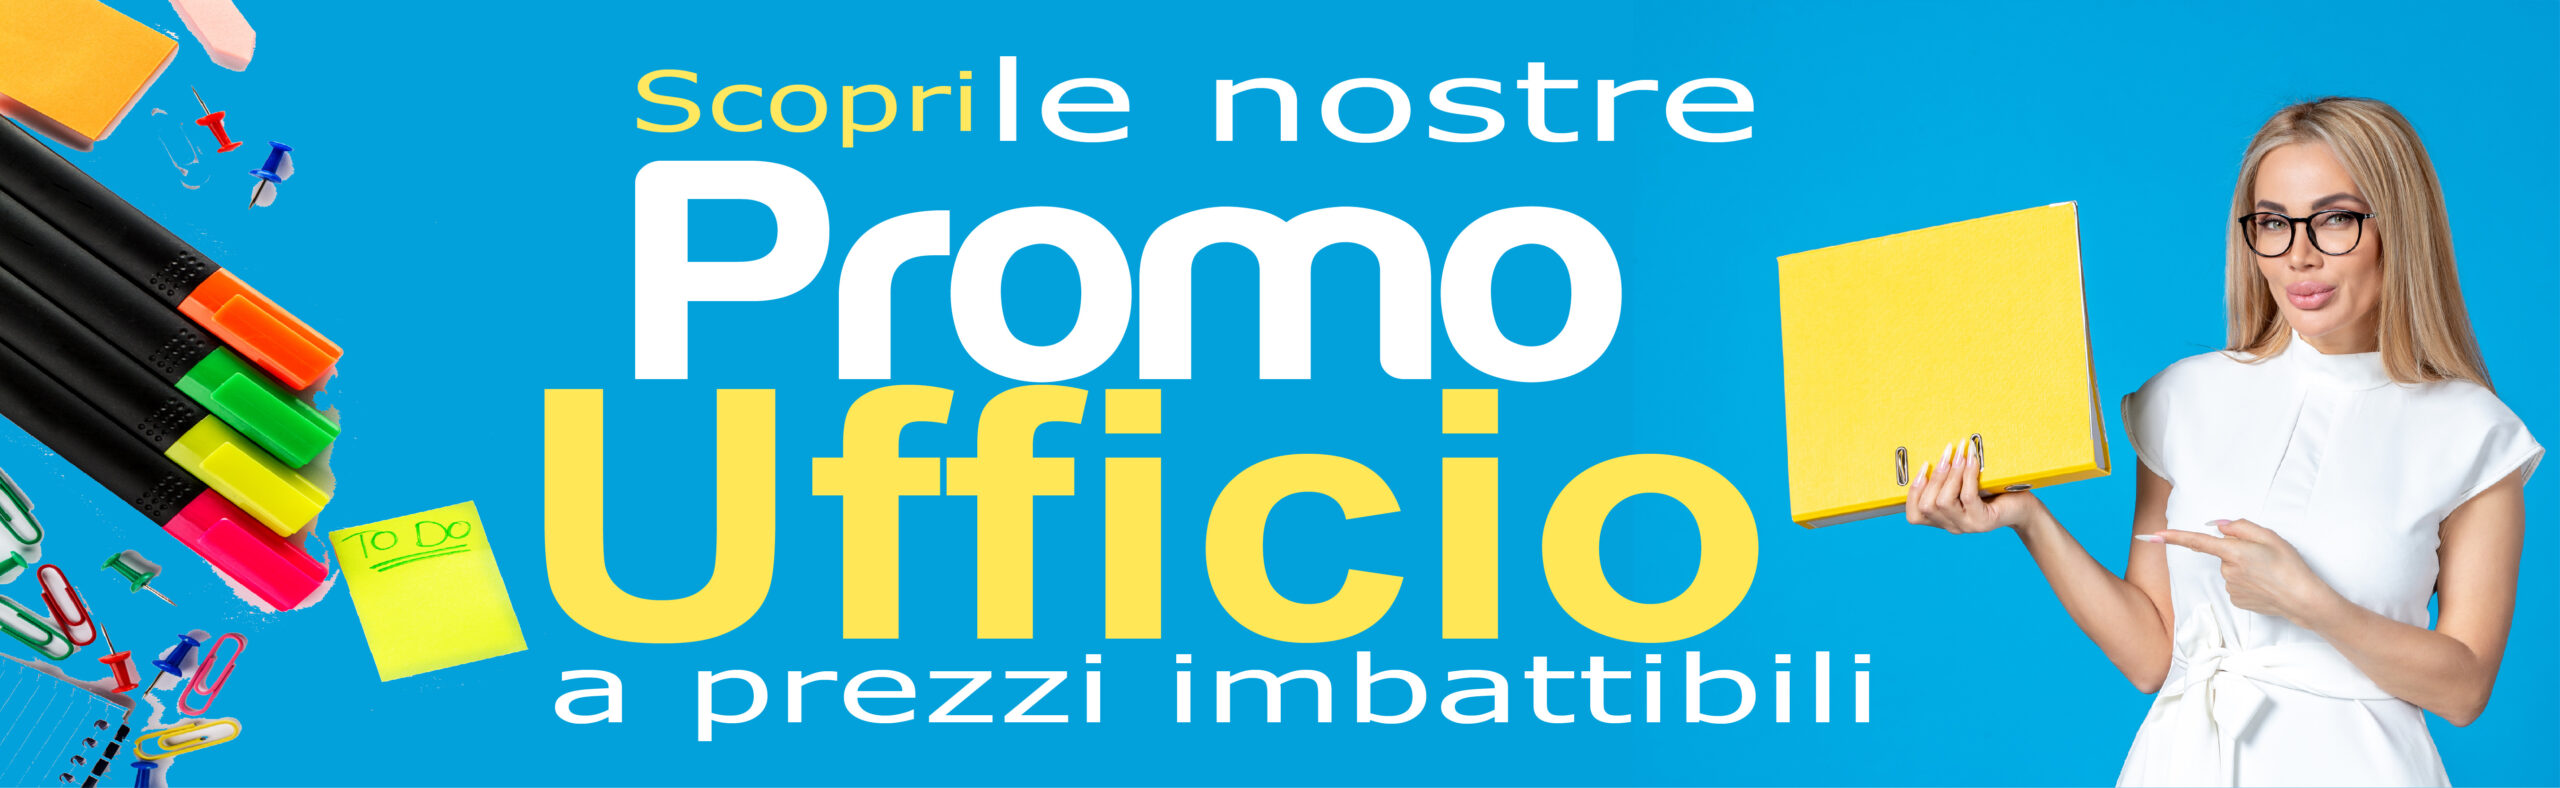 Shoppinando banner Promo Ufficio 11-23-01-01